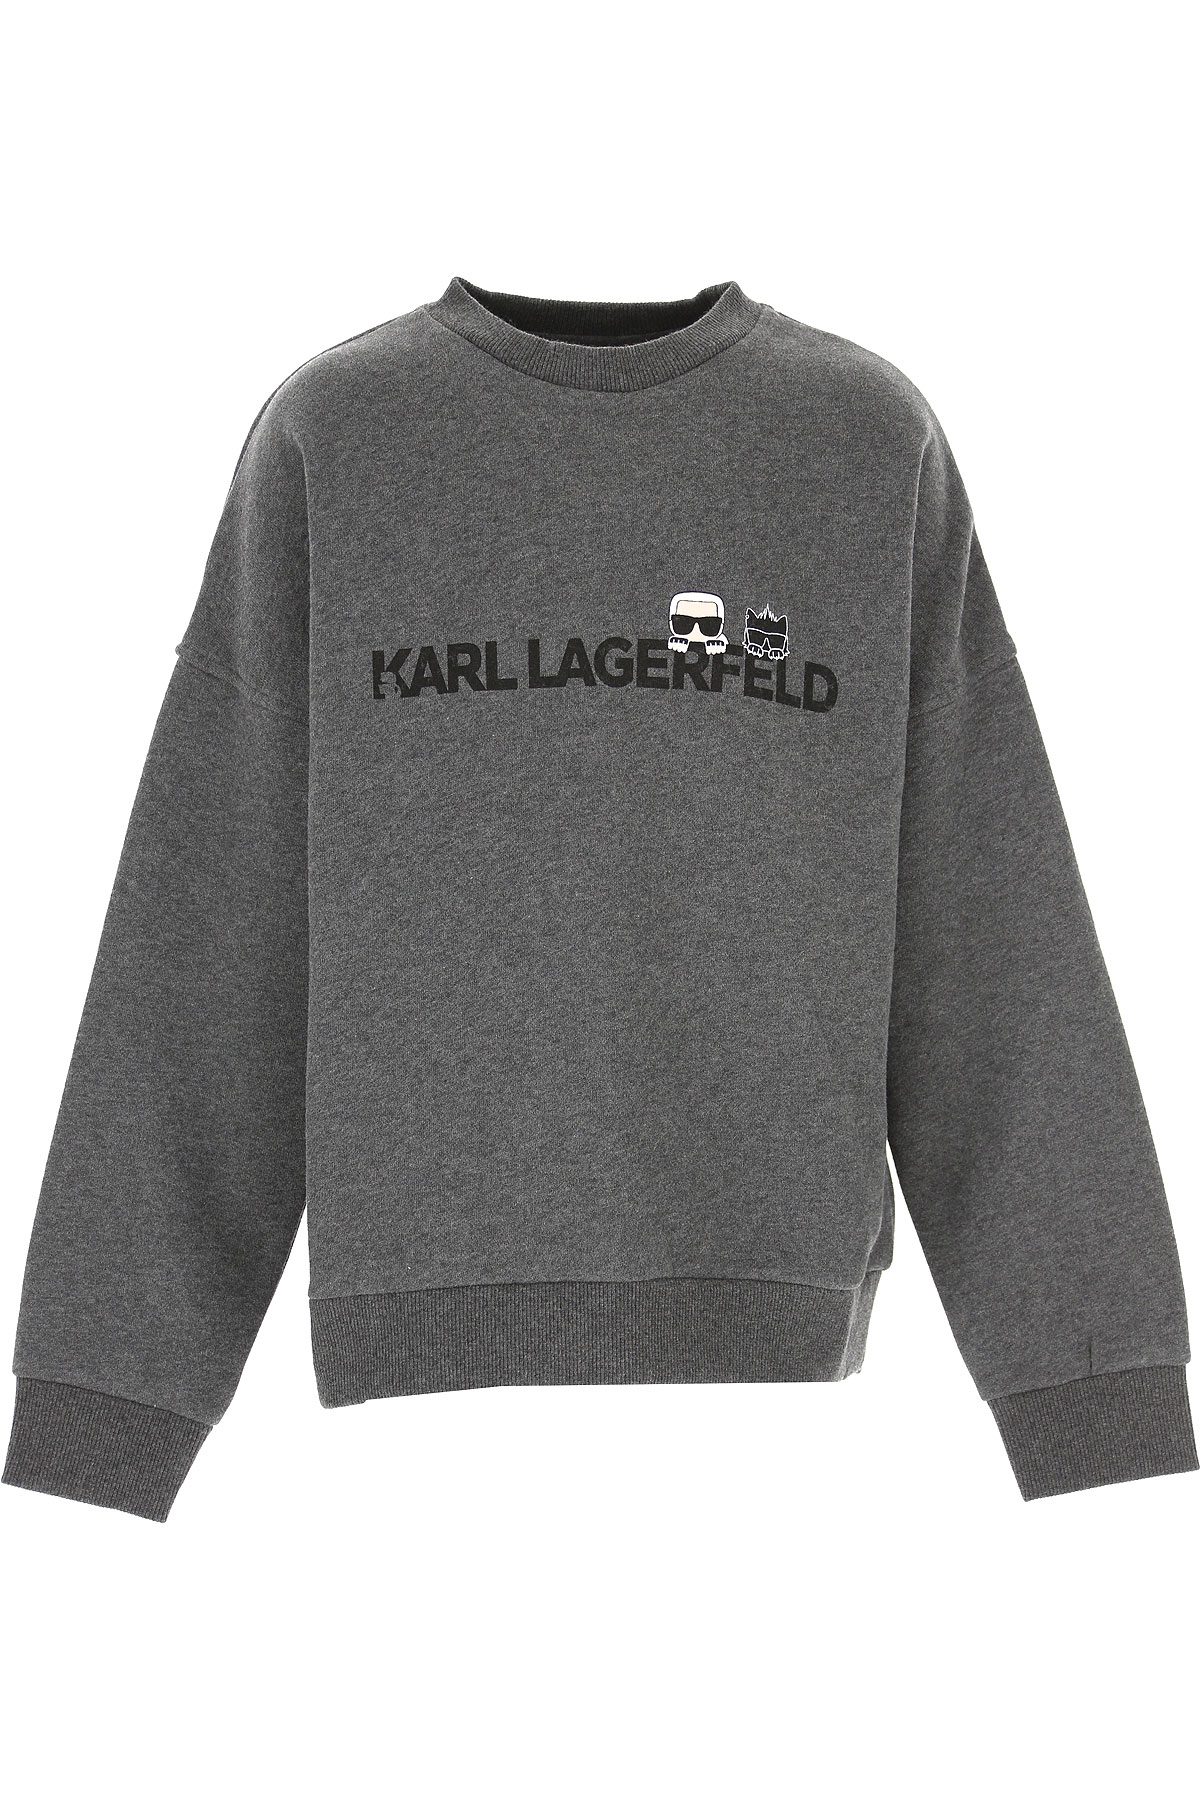 Karl Lagerfeld Kinder Sweatshirt & Kapuzenpullover für Jungen Günstig im Sale, Dunkelgrau, Baumwolle, 2017, 10Y 8Y